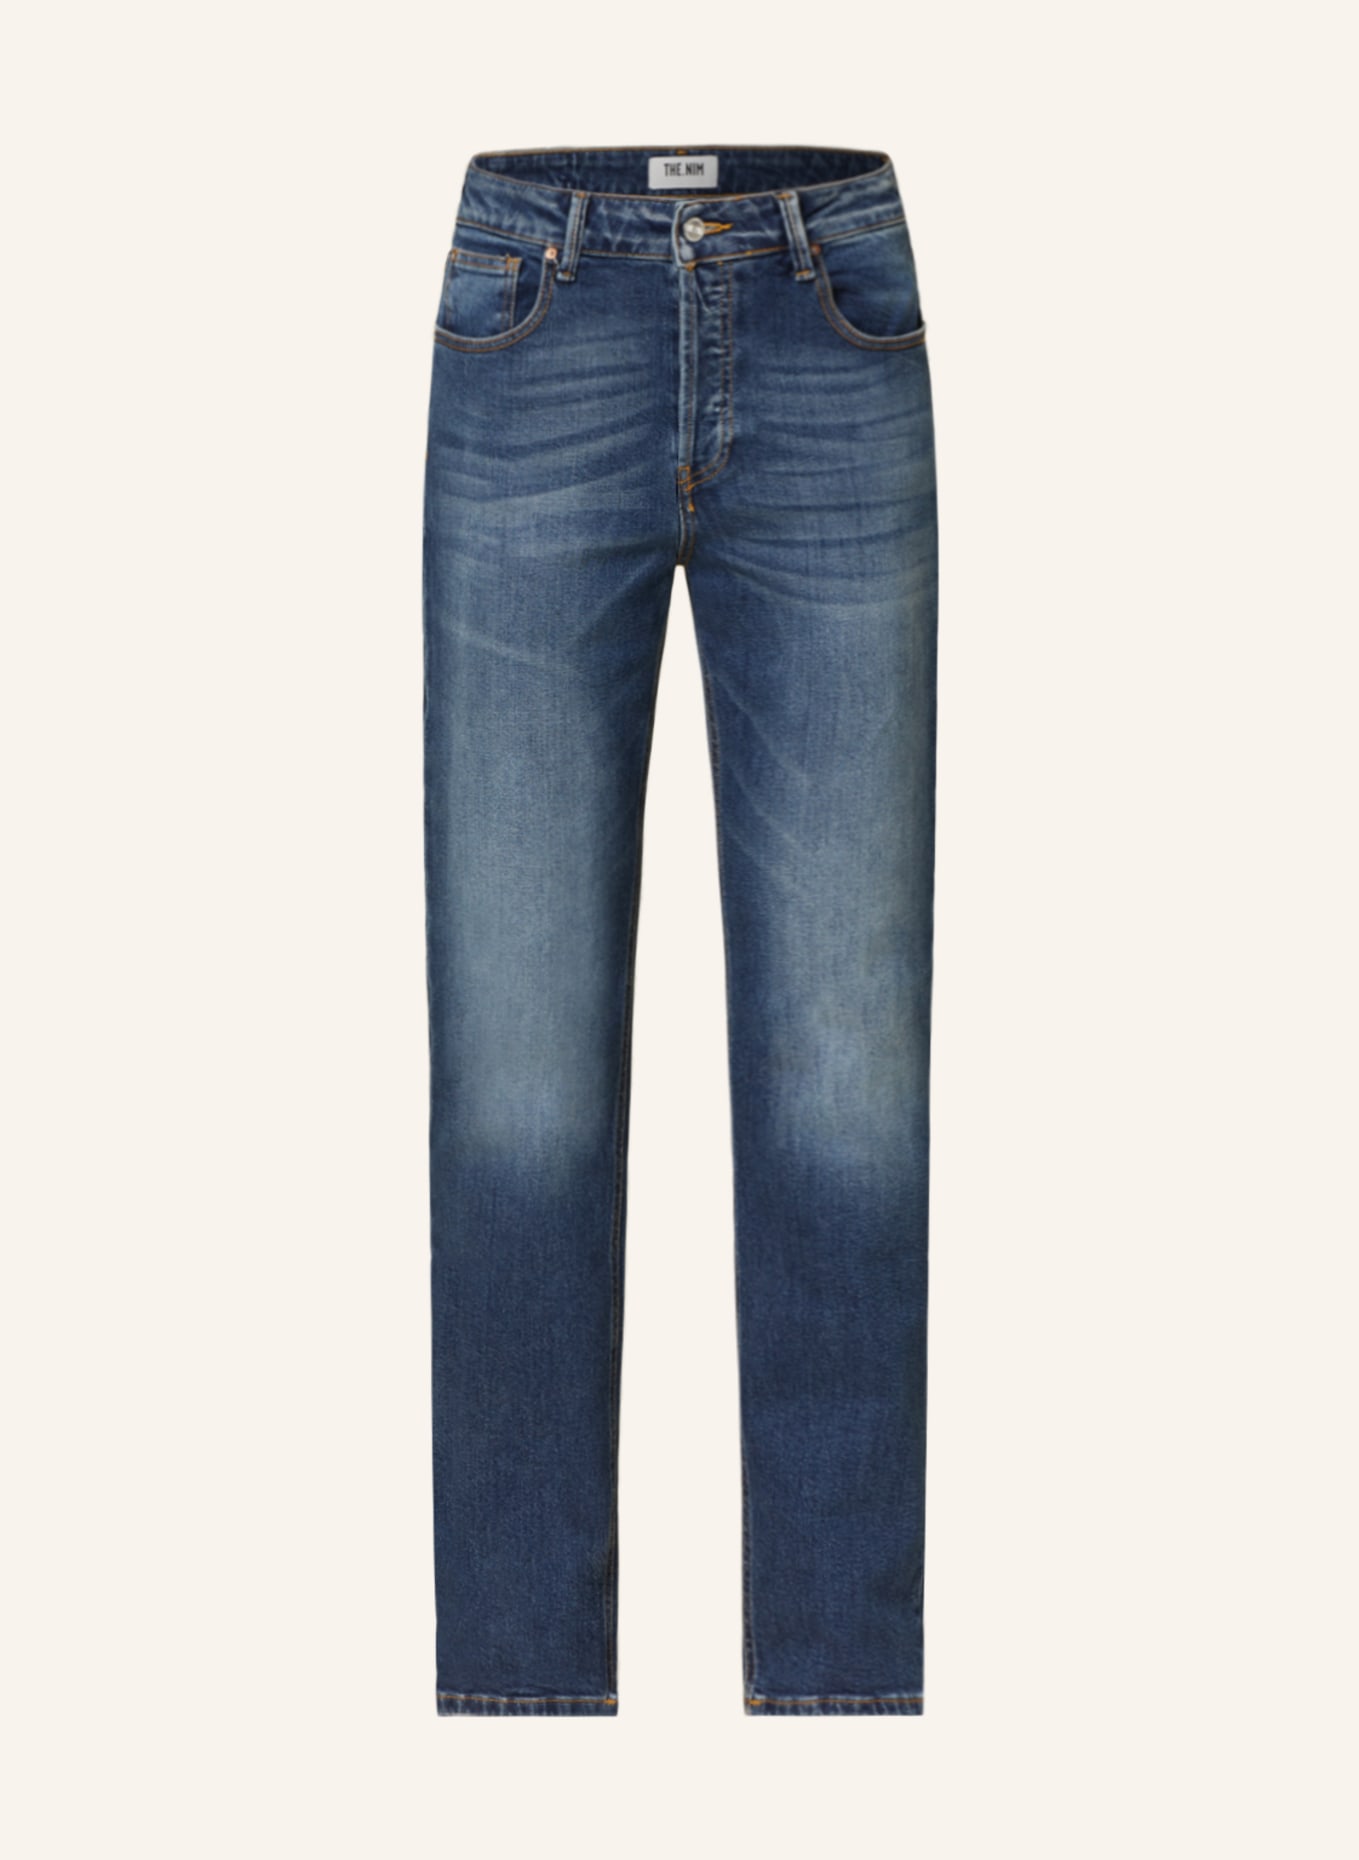 THE.NIM STANDARD Straight Jeans JANE, Farbe: W807-STD MID BLUE (Bild 1)